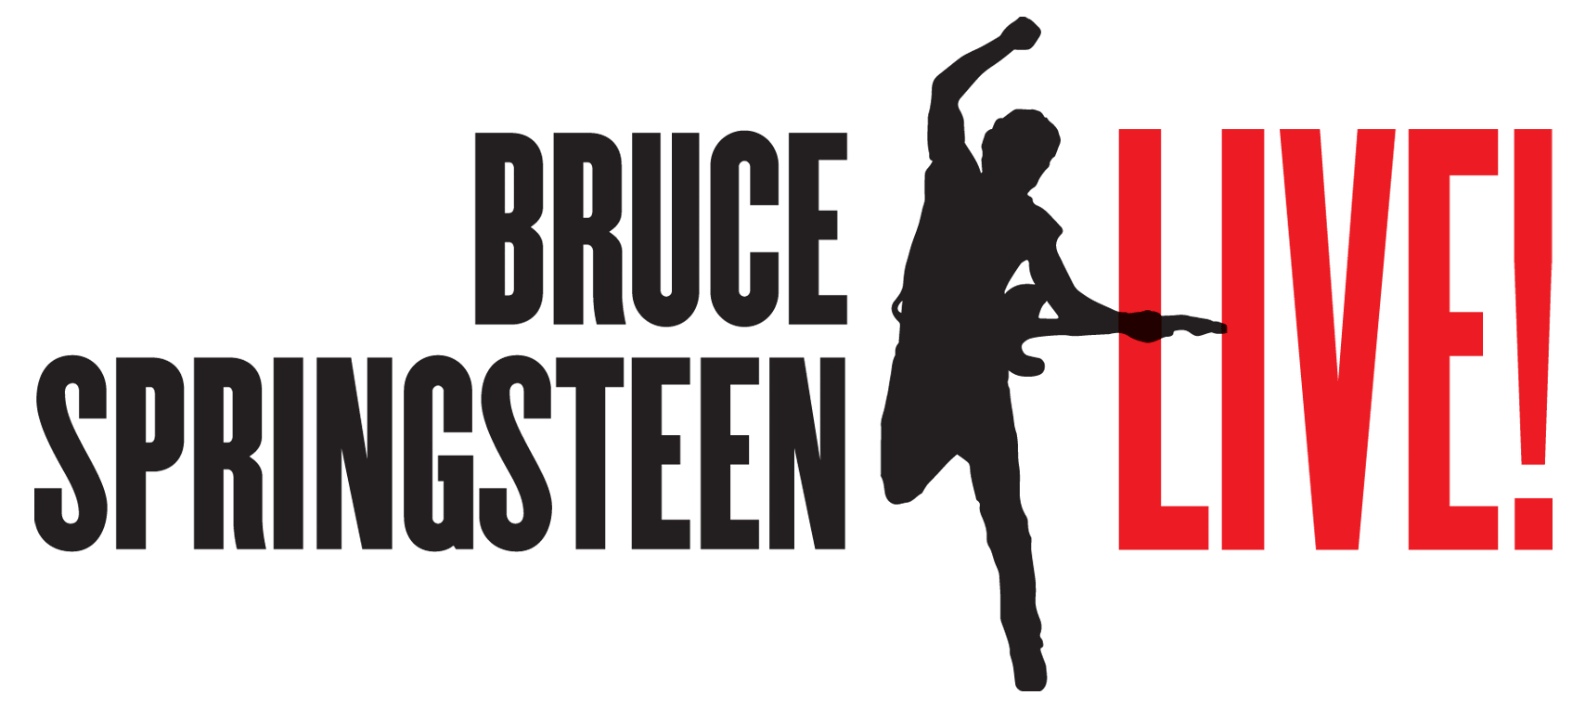 Bruce Springsteen: Live! logo